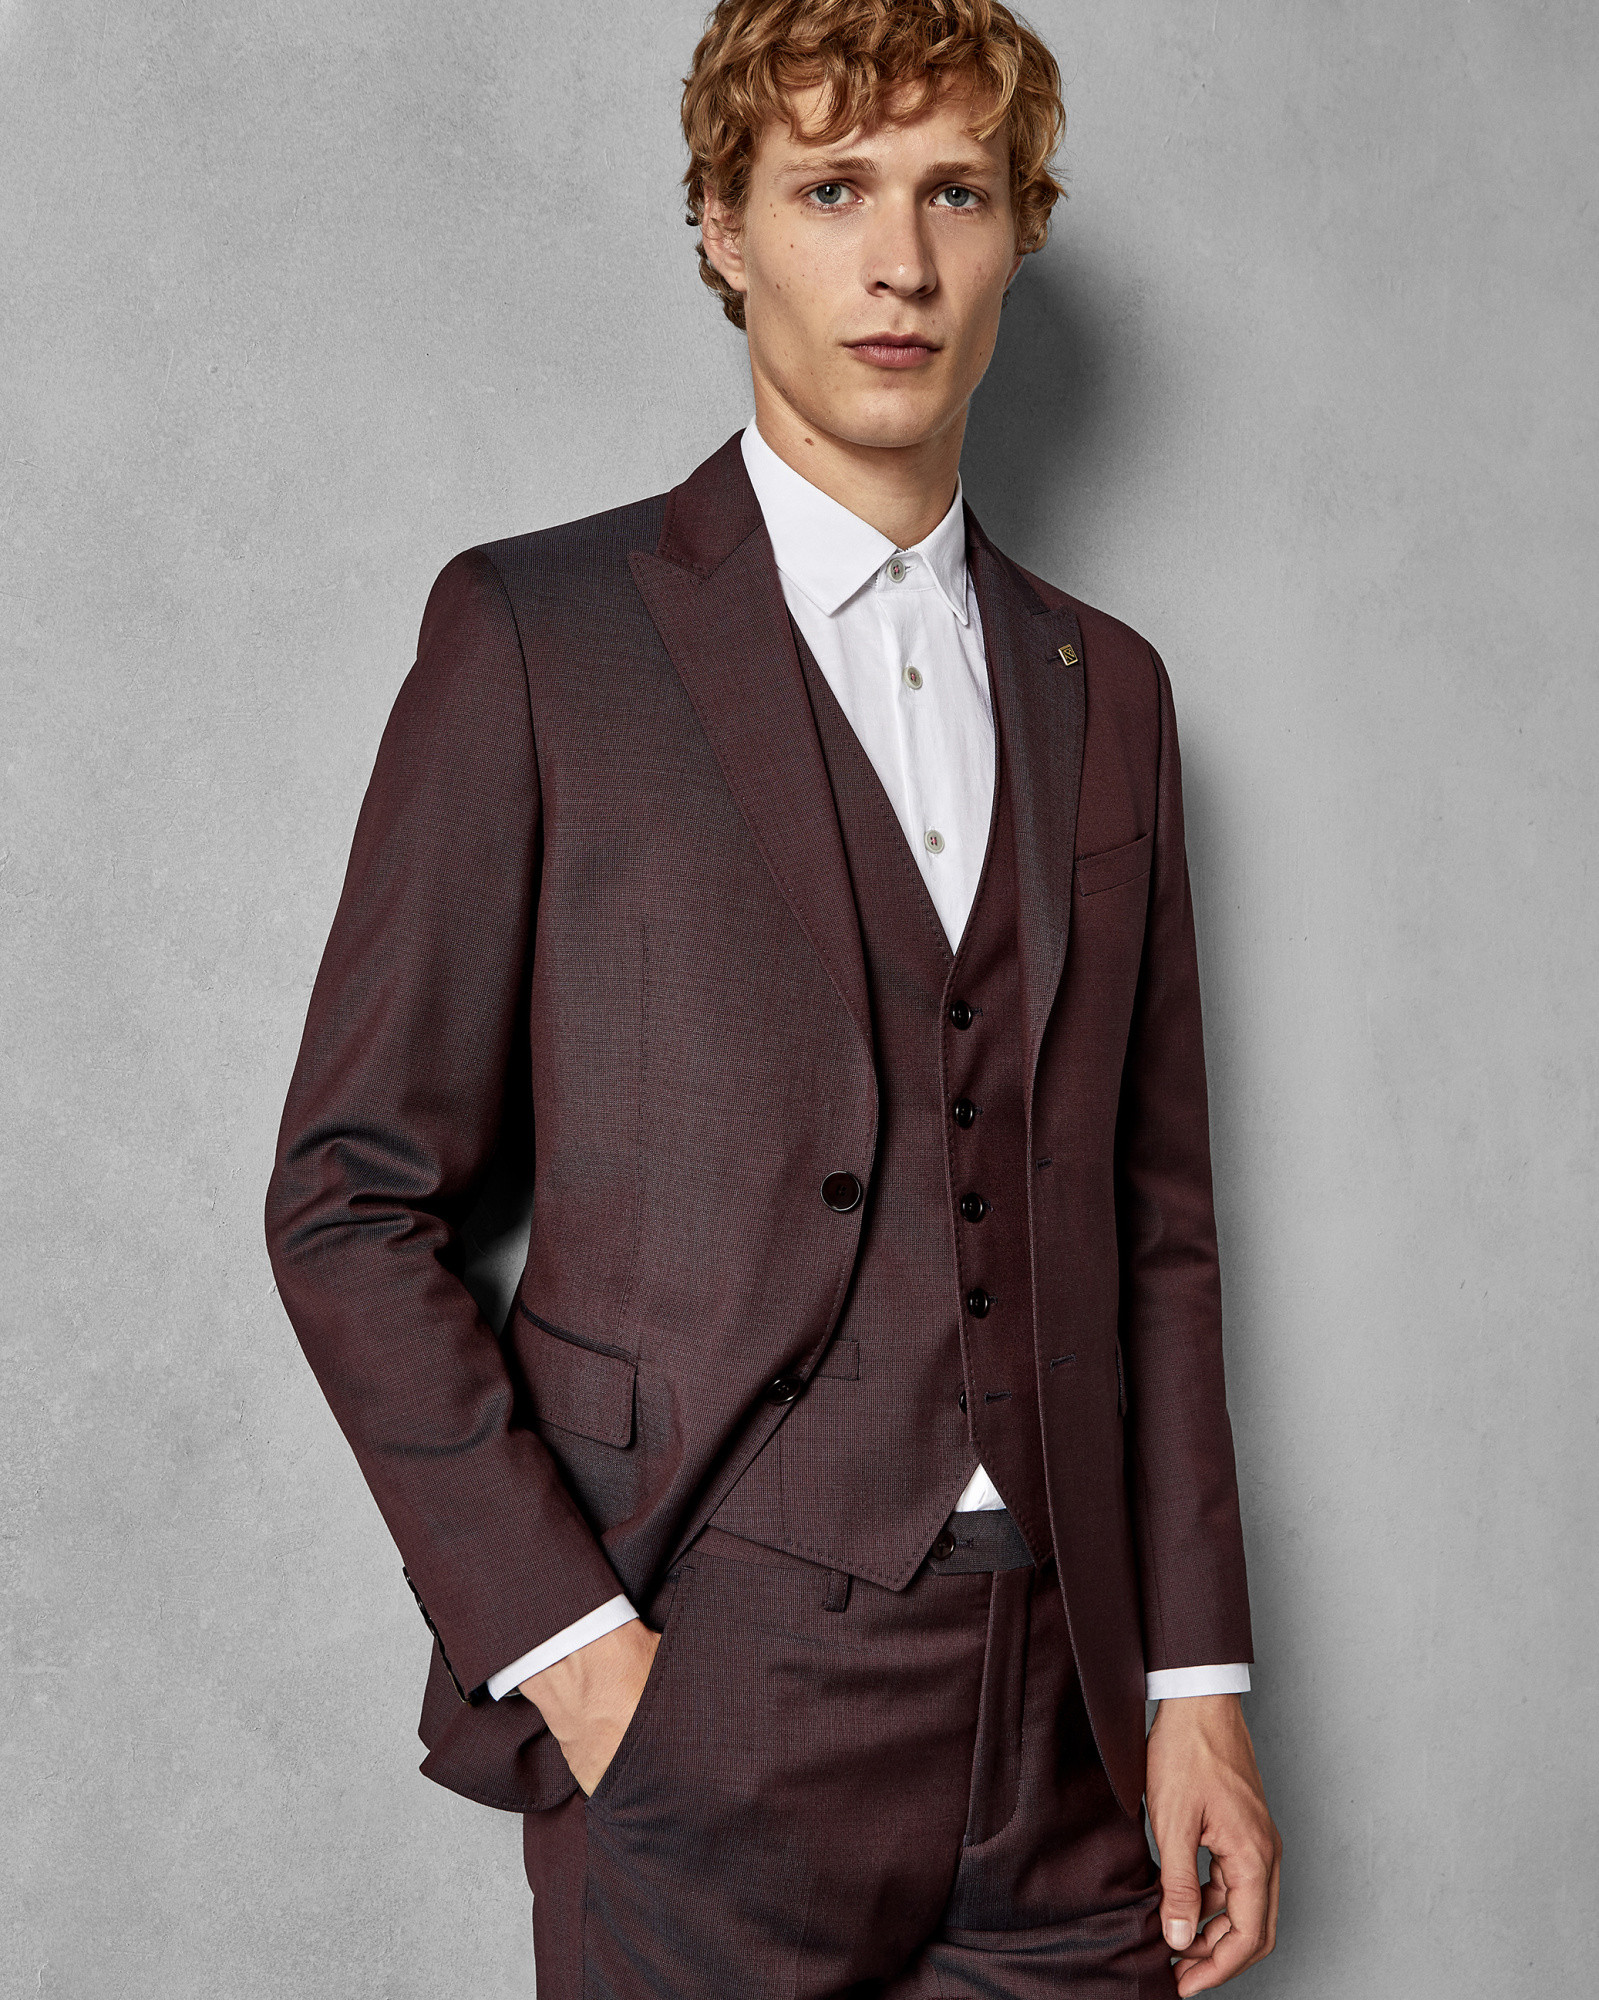 KUBRATJ Slim fit semi plain wool suit jacket